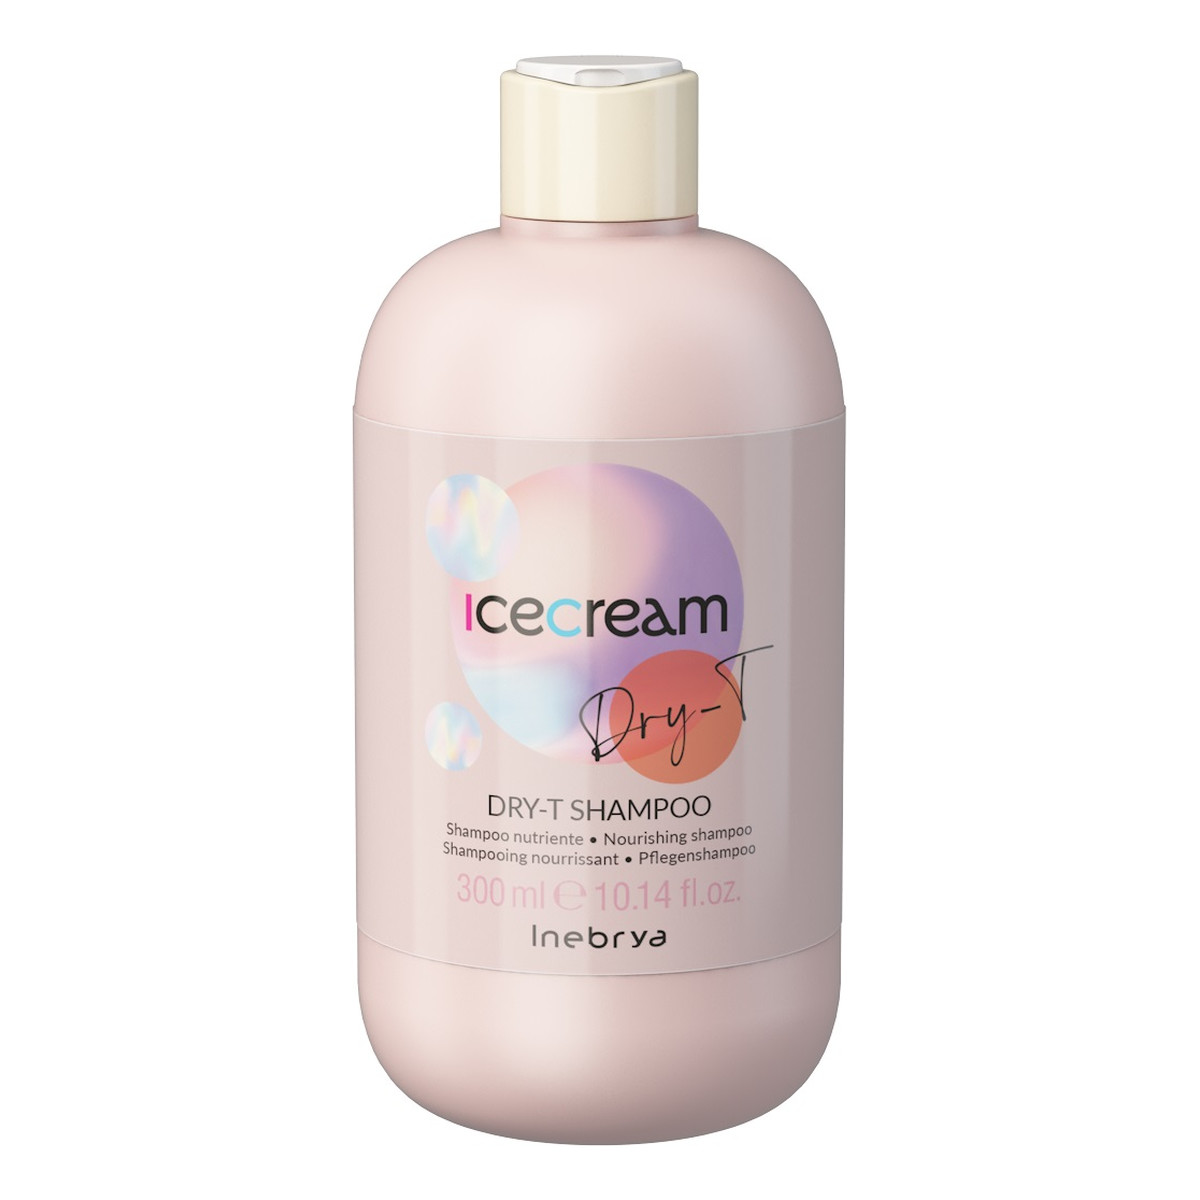 Inebrya Dry-t shampoo odżywczy szampon do włosów 300ml